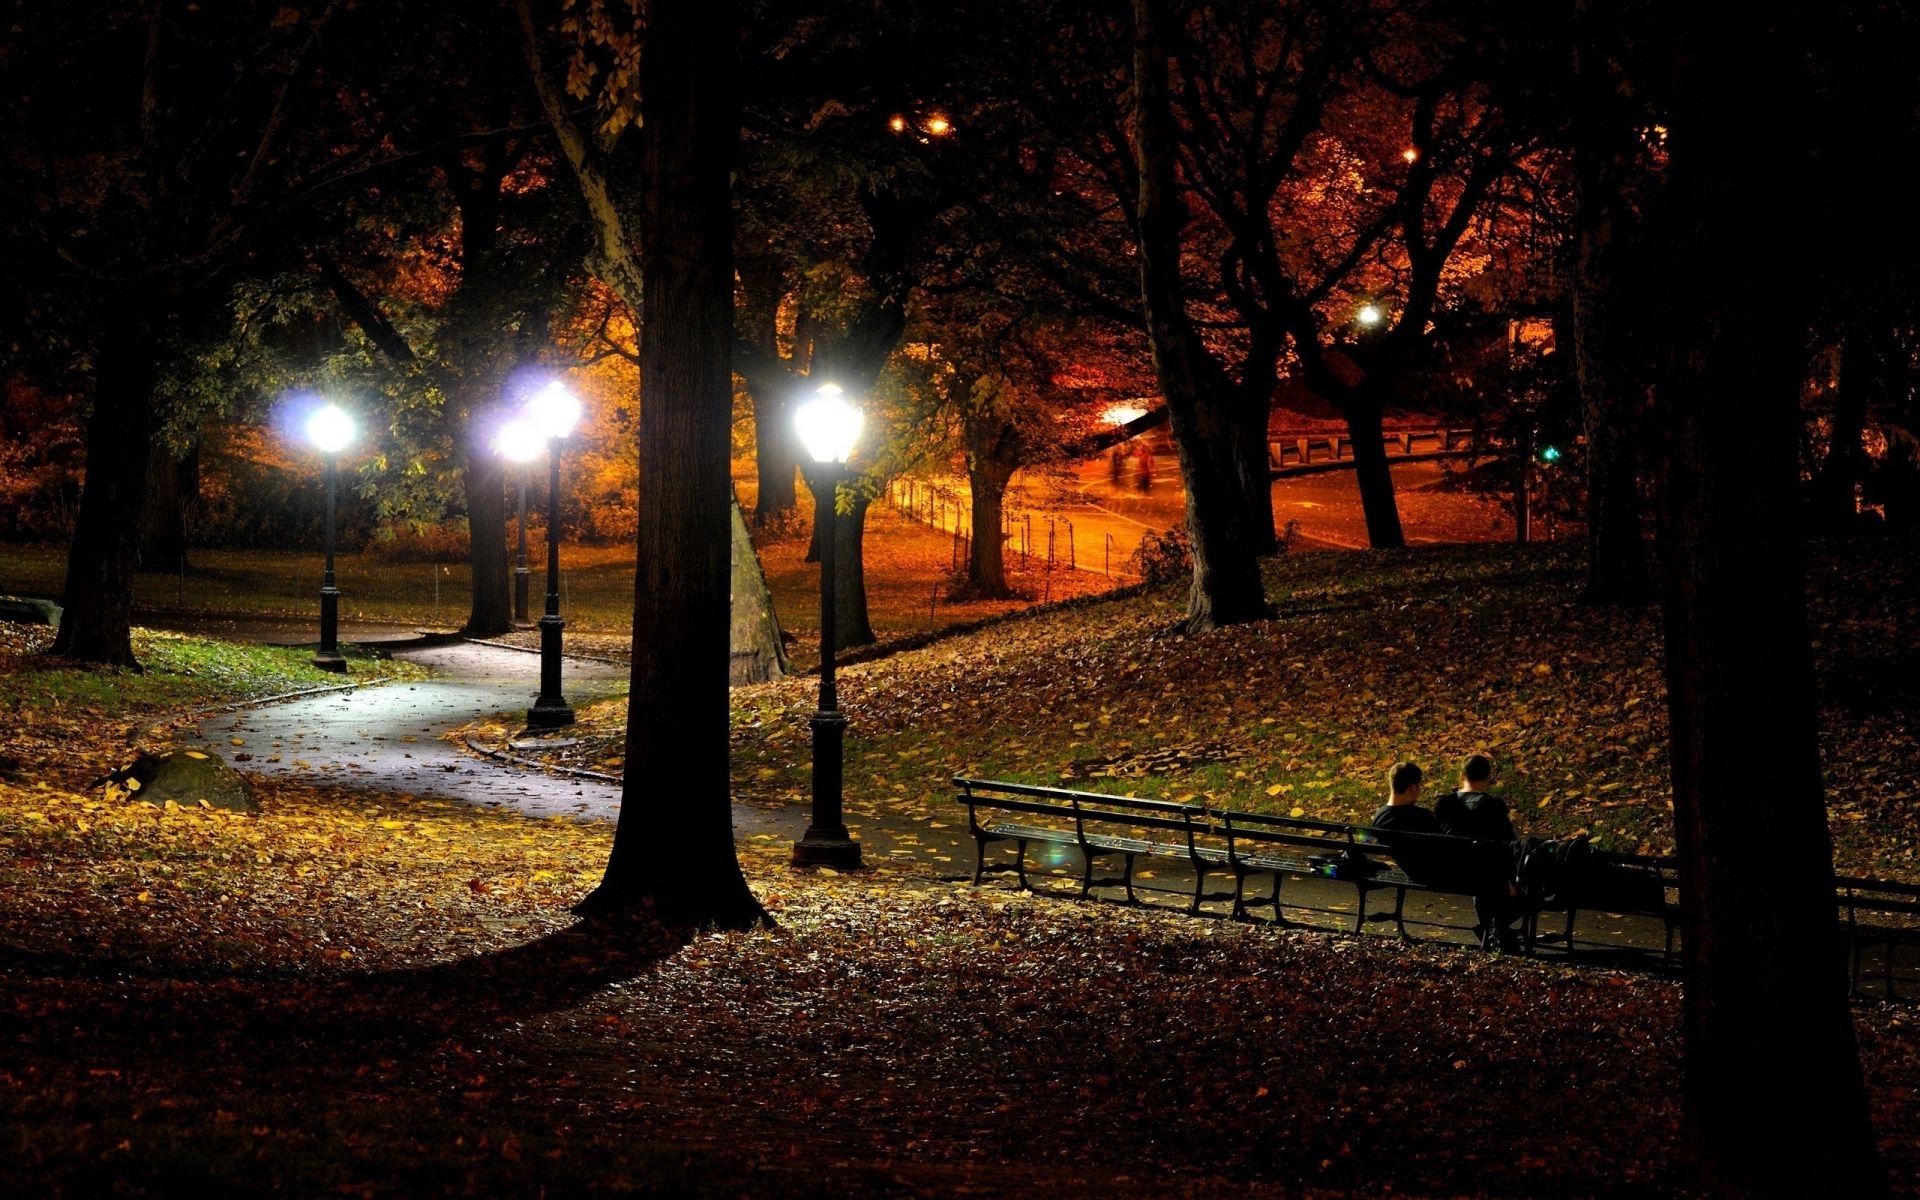 города дерево свет улица тень дорога пейзаж аллея осень парк рассвет скамейка